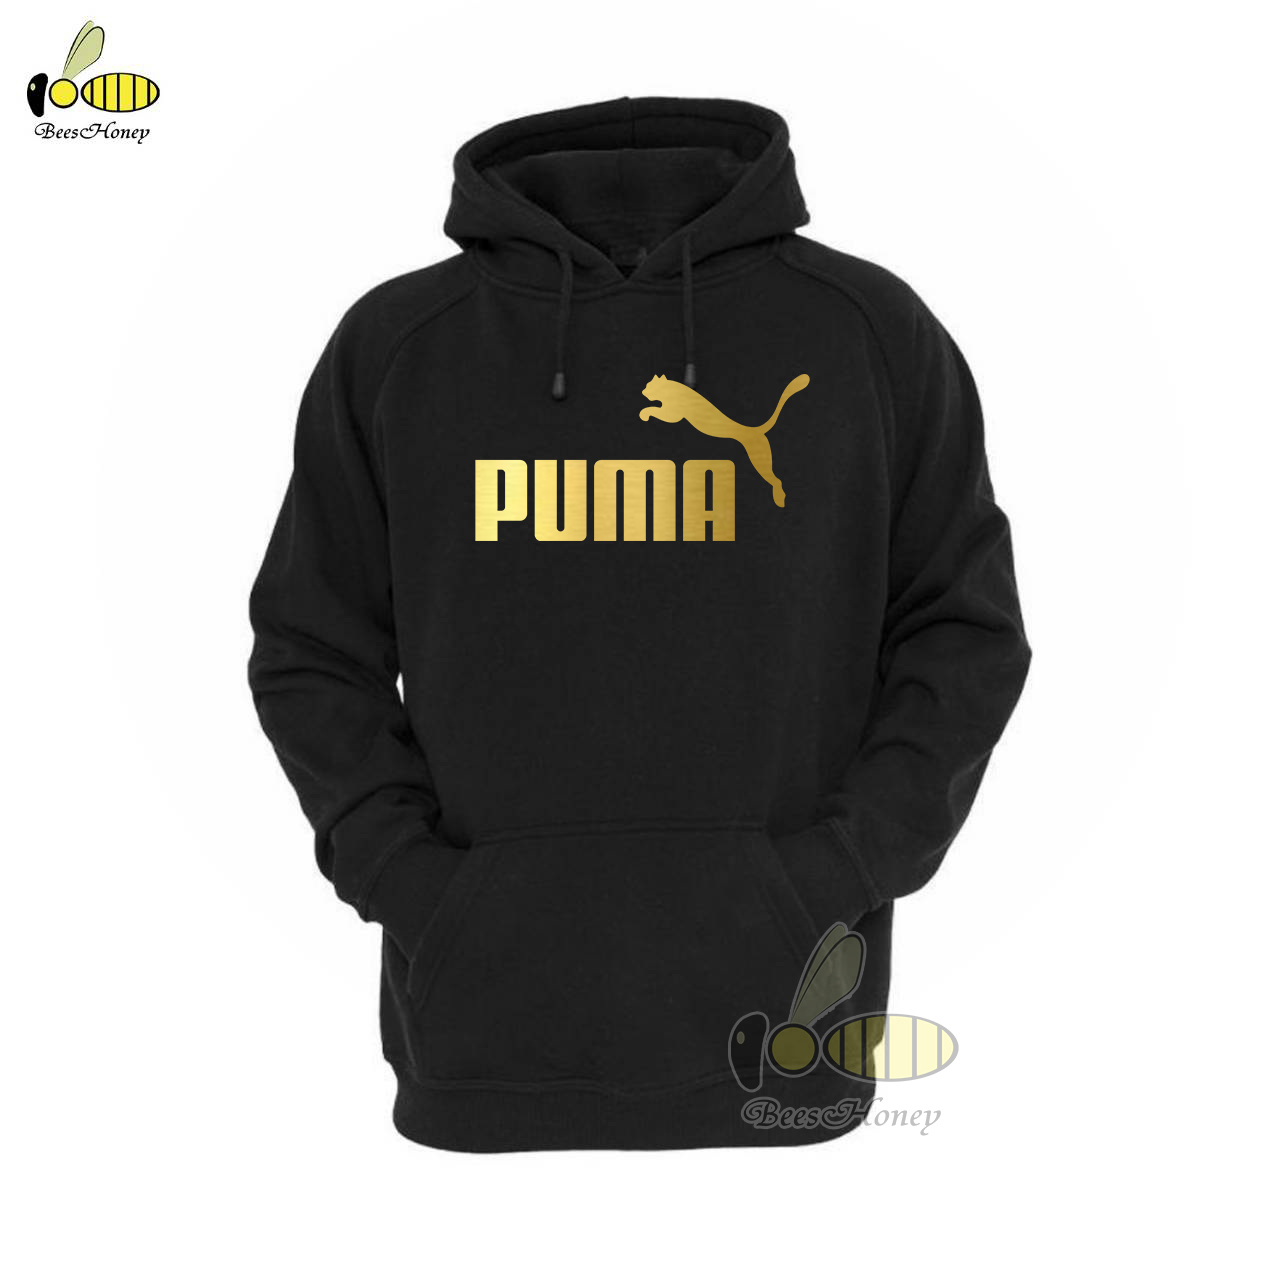 Puma เสื้อกันหนาว เสื้อฮู้ด แบบซิป-สวม งาน H&M เกรดA งานดีแน่นอน หนานุ่มใส่สบาย Hoodie แจ็คเก็ต